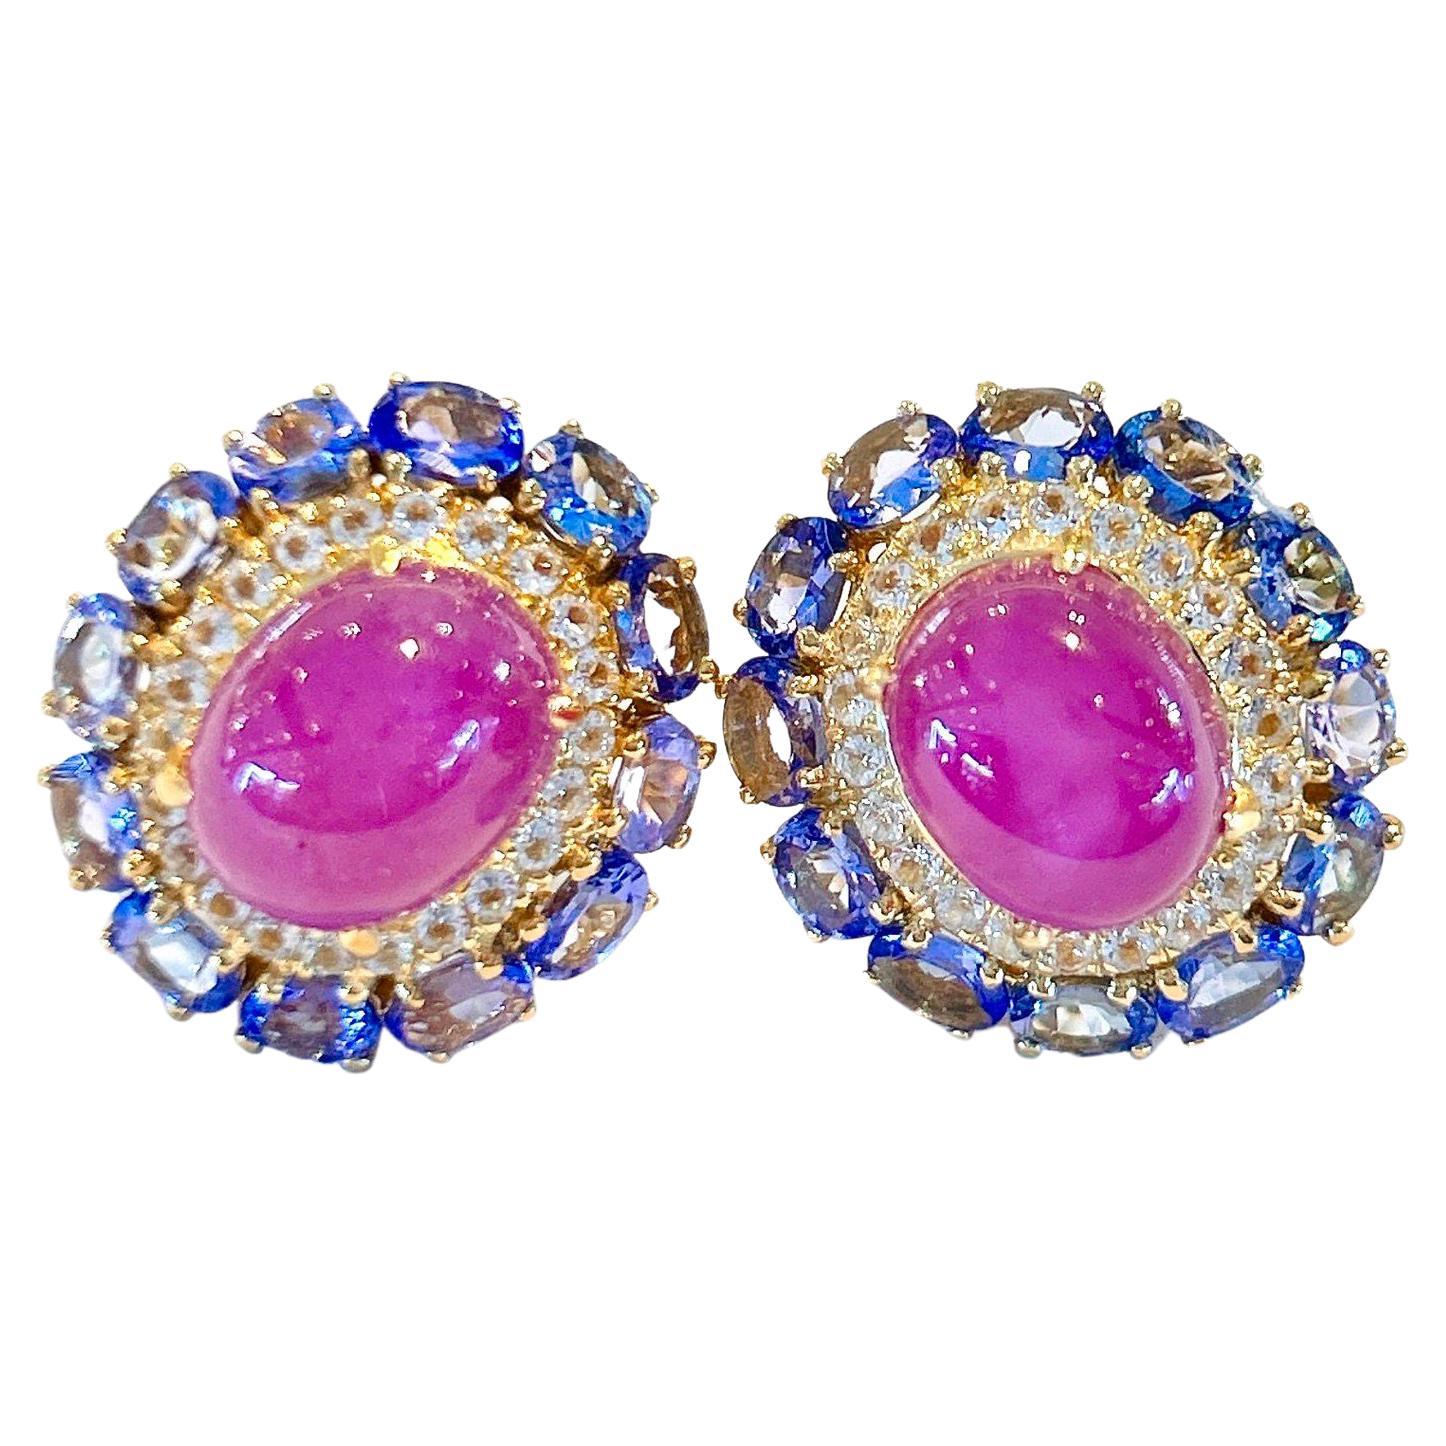 Bochic “Capri” Ruby & Tanzanite Clip on Earrings Set in 22k Gold & Silver For Sale